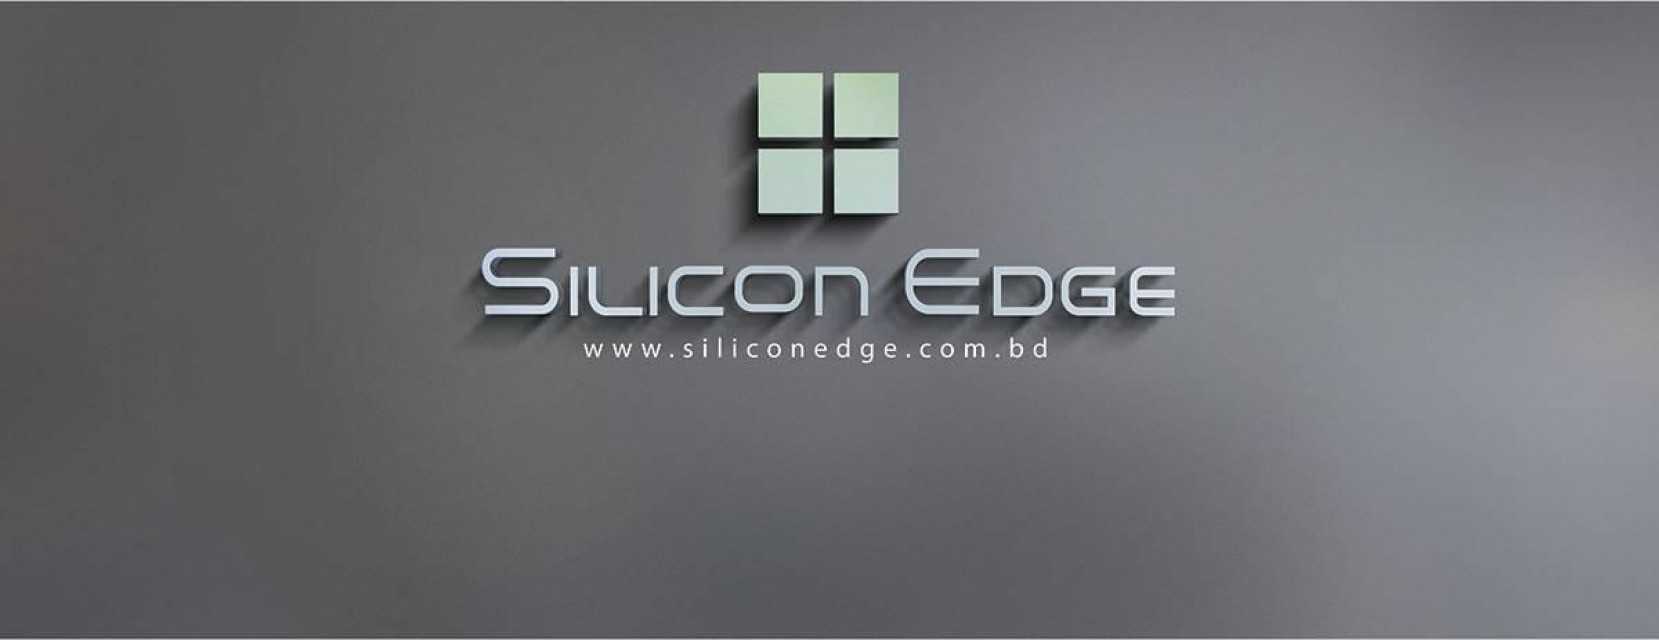 Silicon Edge